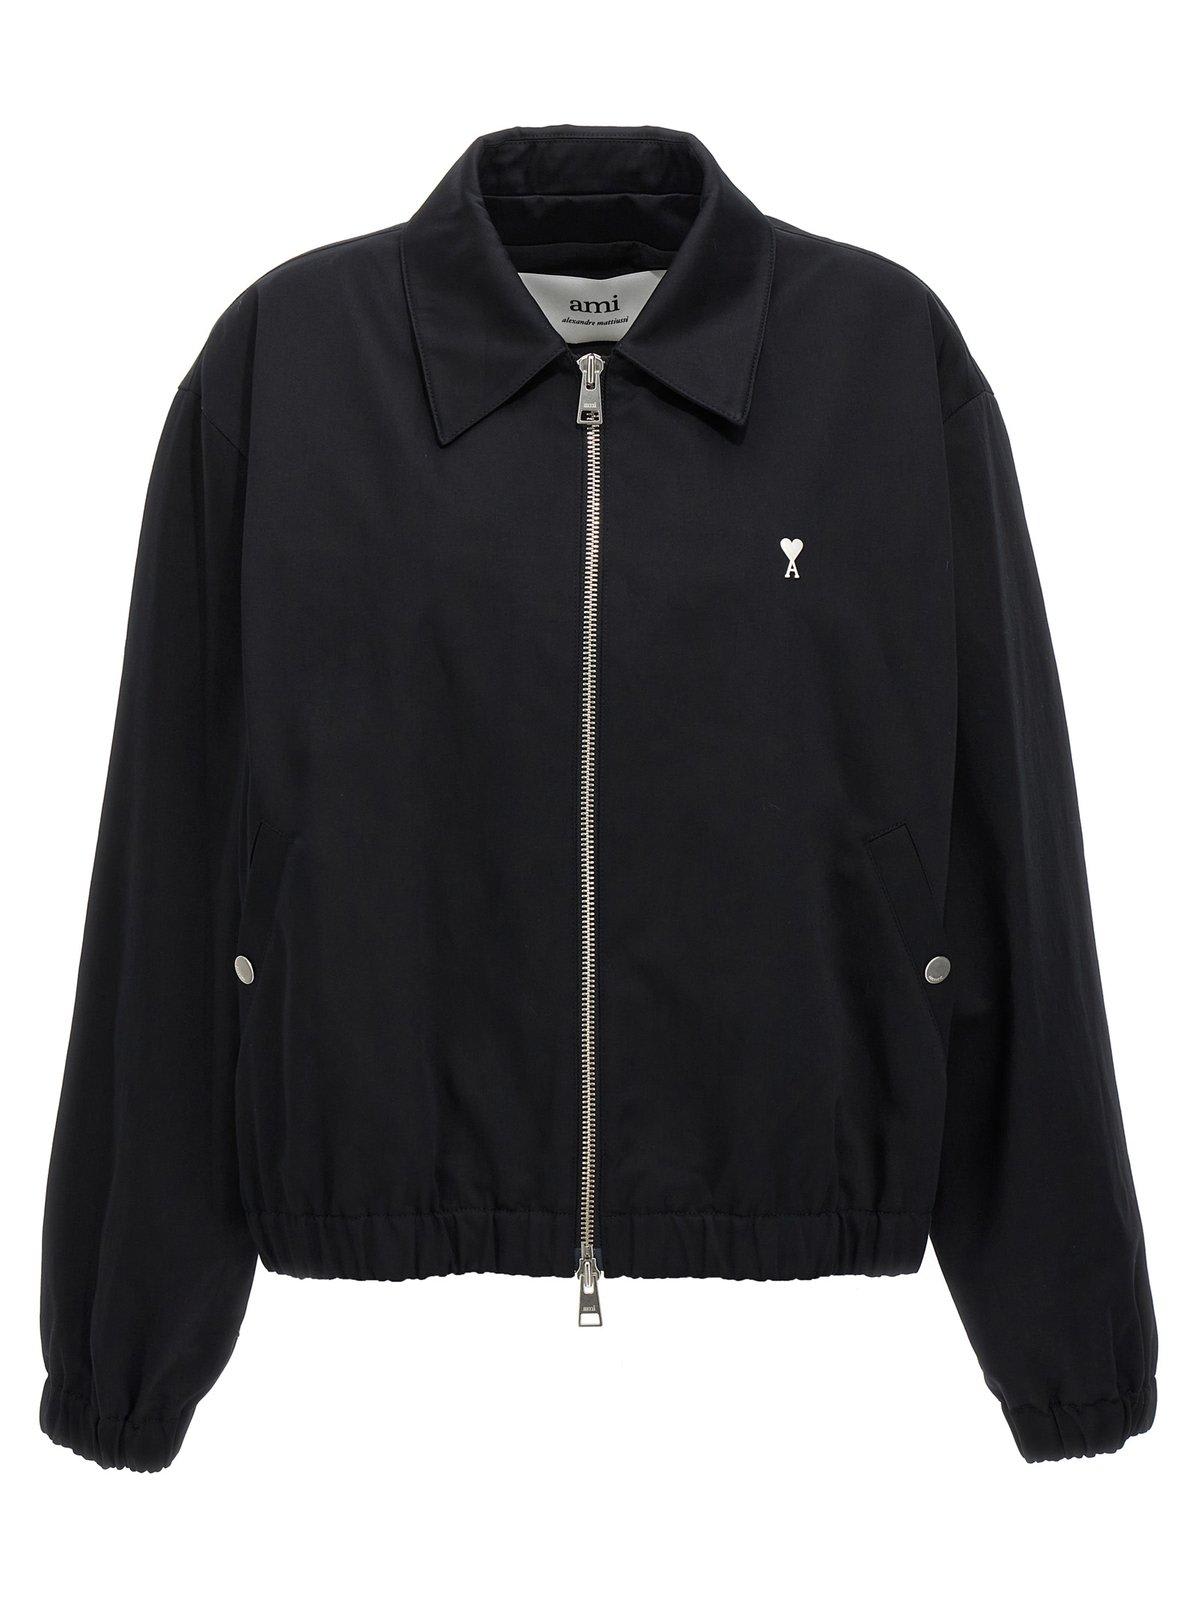 Ami Alexandre Mattiussi Paris Ami De Coeur Zipped Jacket - BLACK - male - Size: Large